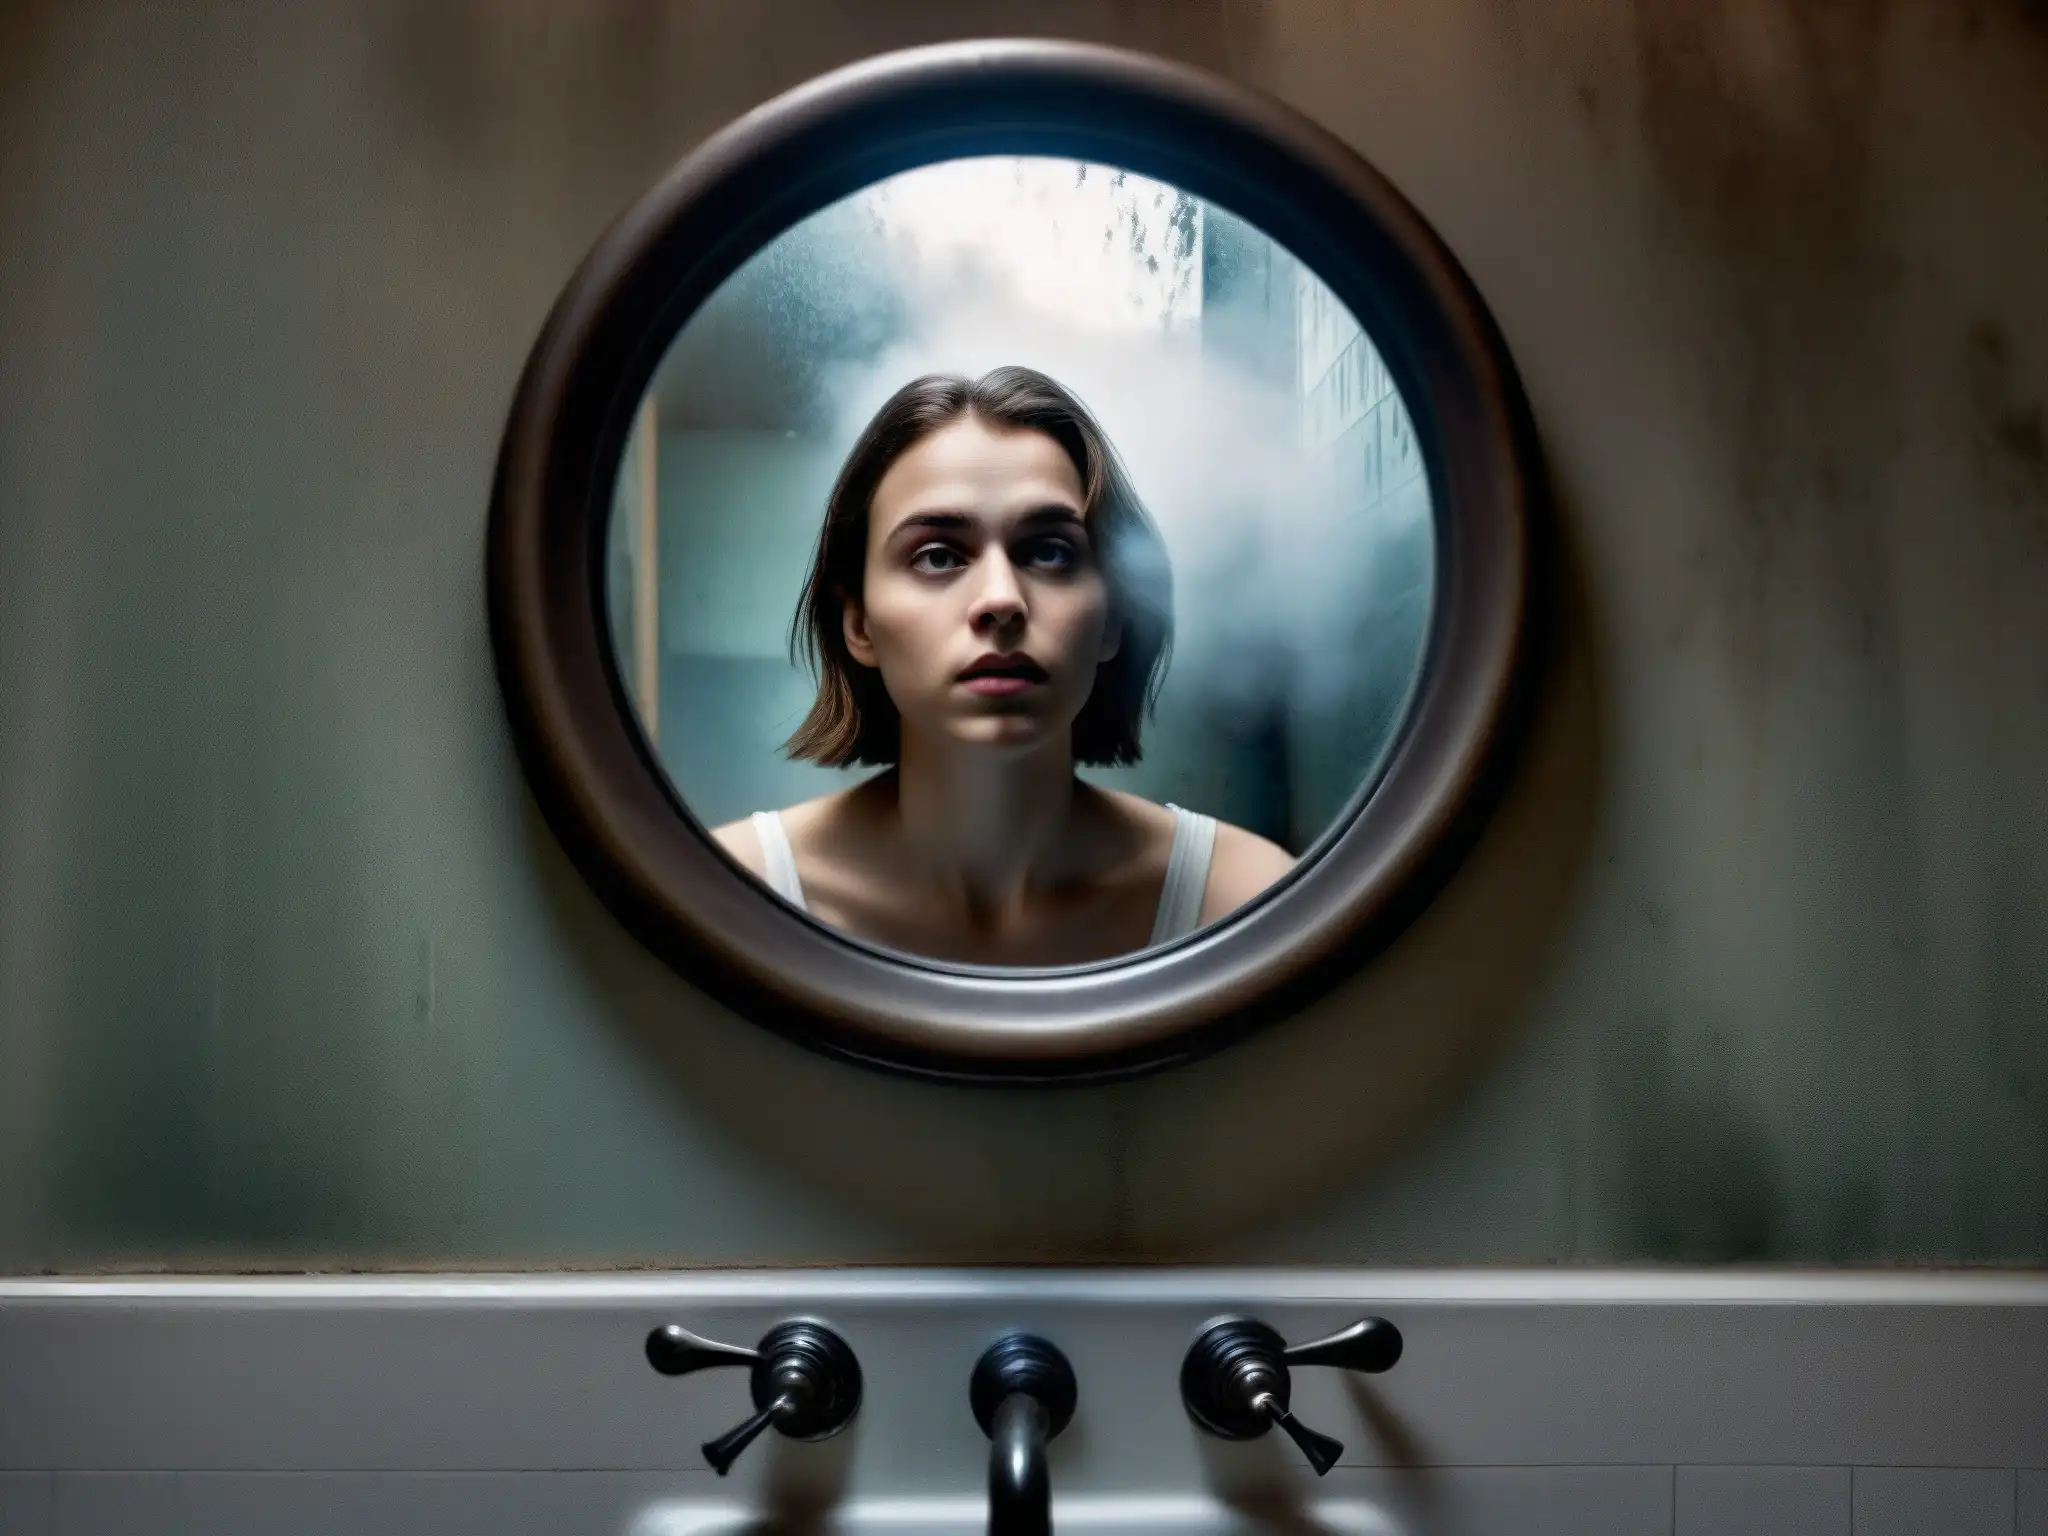 En el reflejo del espejo del baño, una joven asustada parece invocar a la evolución leyenda Bloody Mary era digital